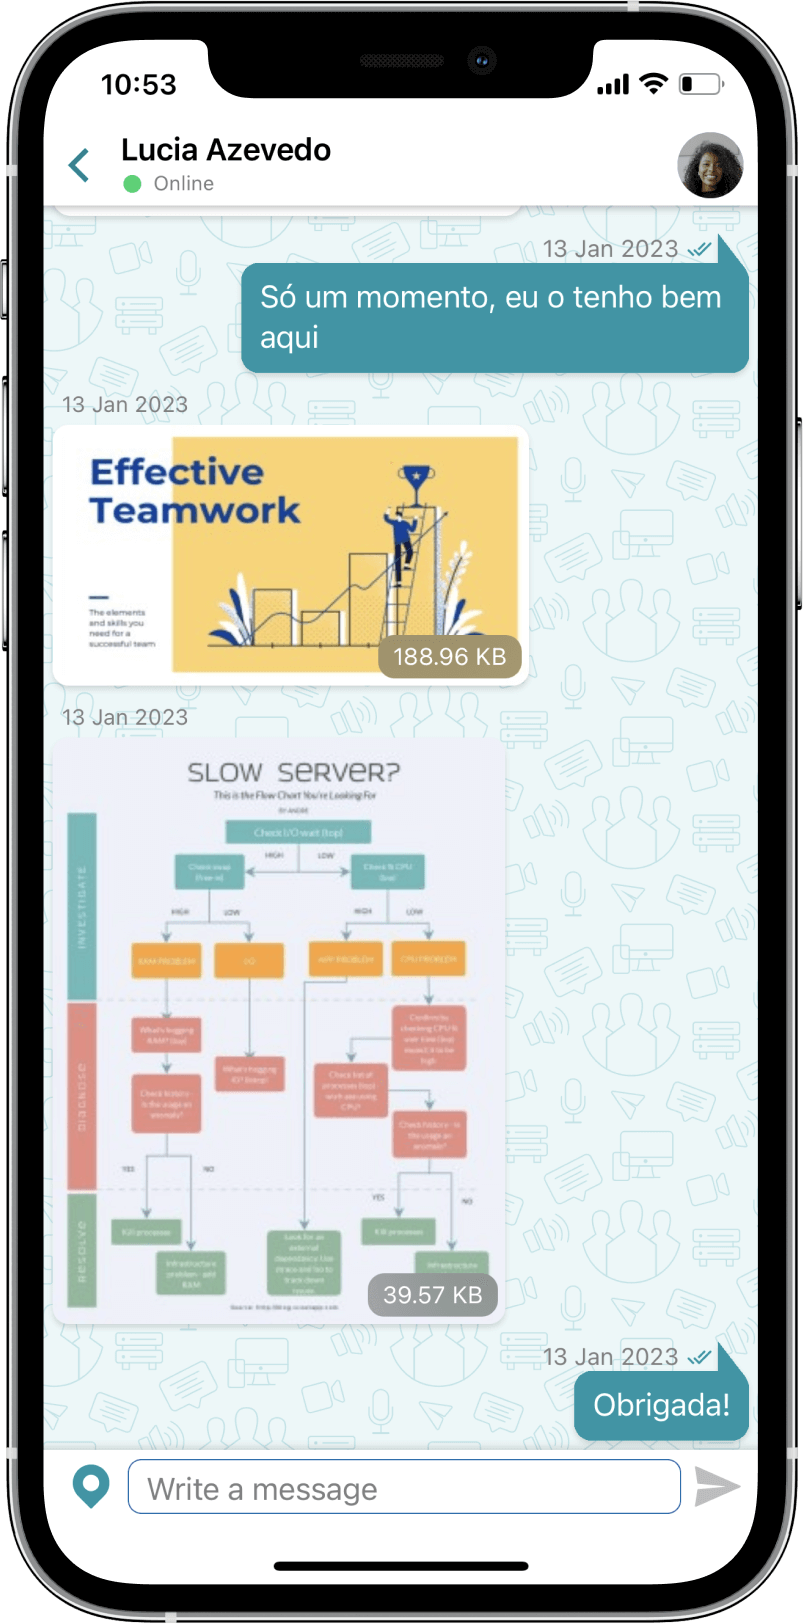 TrueConf 3.3 para iOS: nova interface do usuário, modo de reunião inteligente, acesso offline a chats, contatos e histórico de chamadas 14